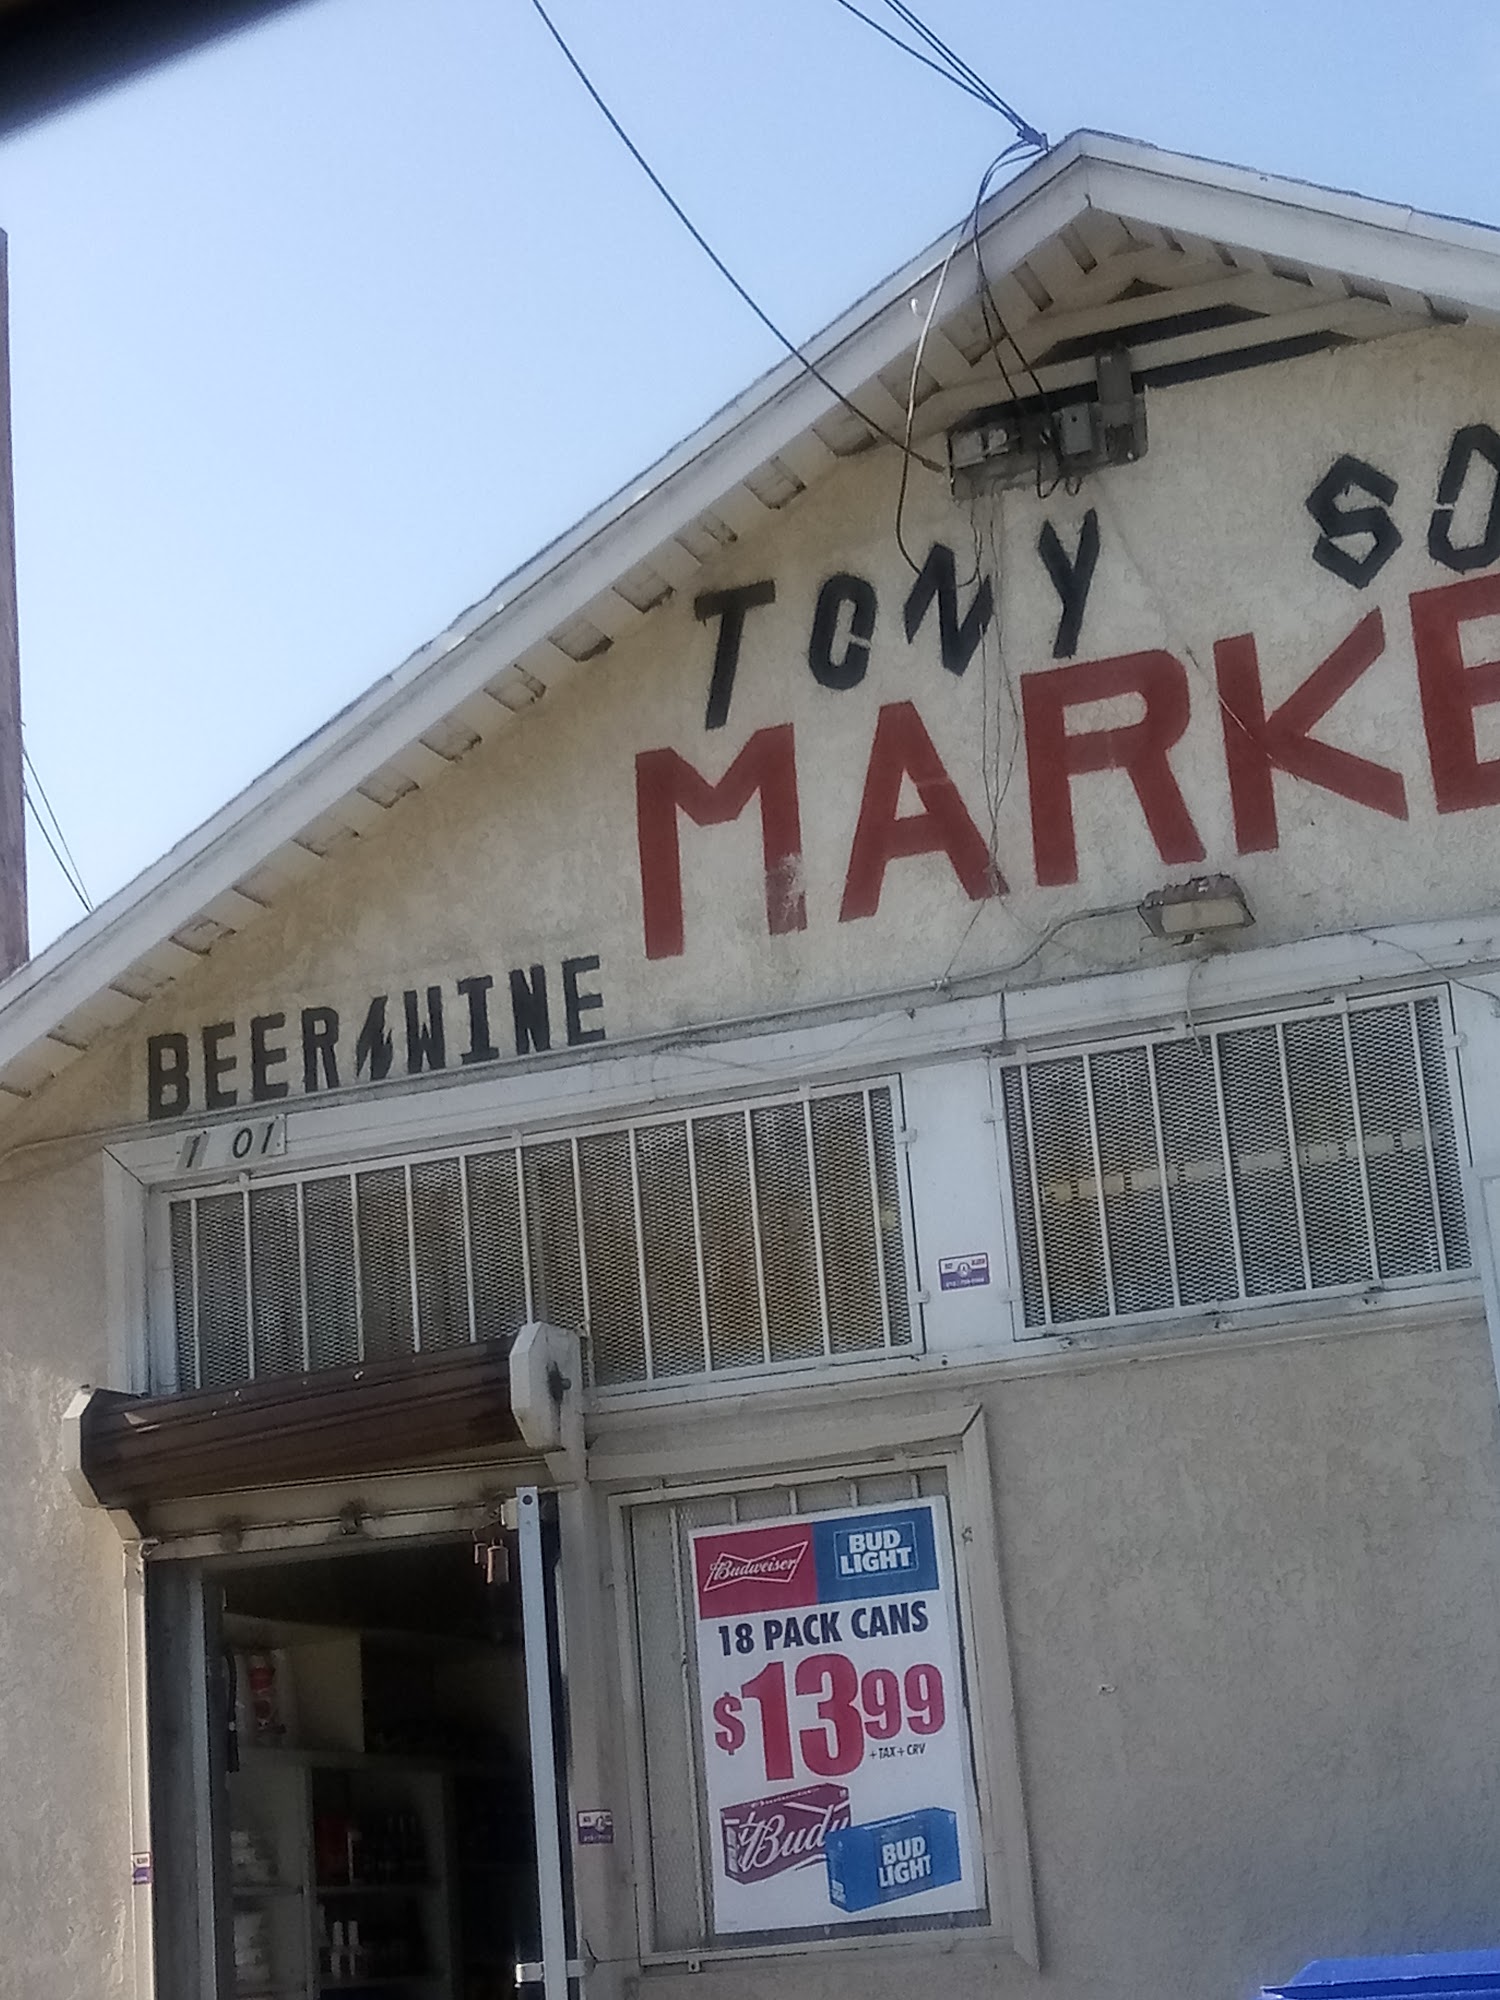 Tony & Son Market